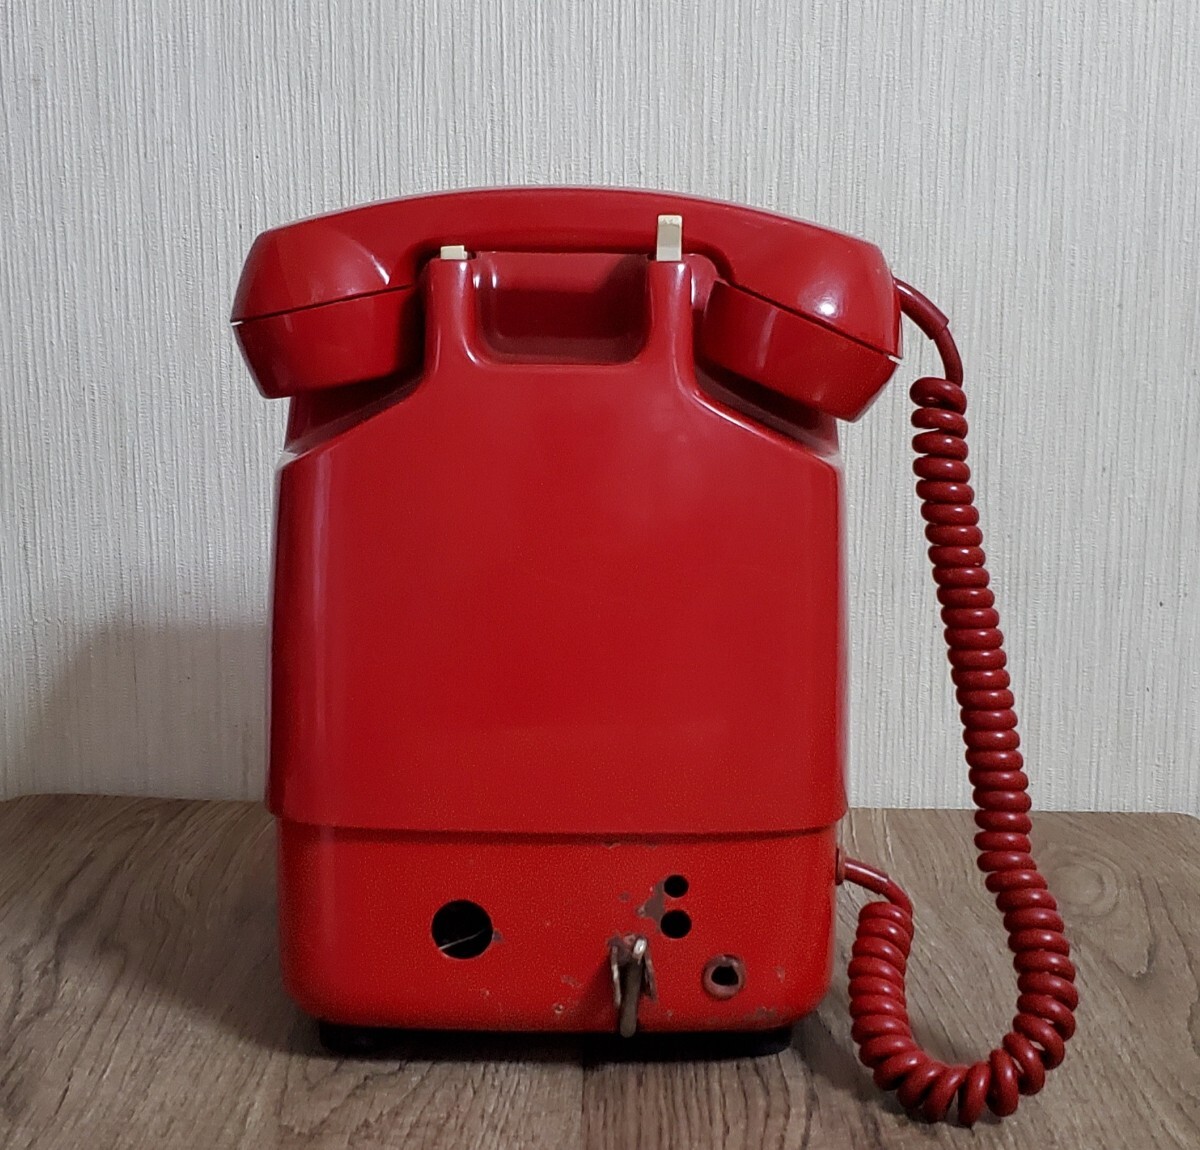 赤電話 田村電機製作所 公衆電話 電話機 レトロ 当時物 昭和 ダイヤル式 アンティーク 貯金箱 ジャンク品 赤電話機 だるま の画像2